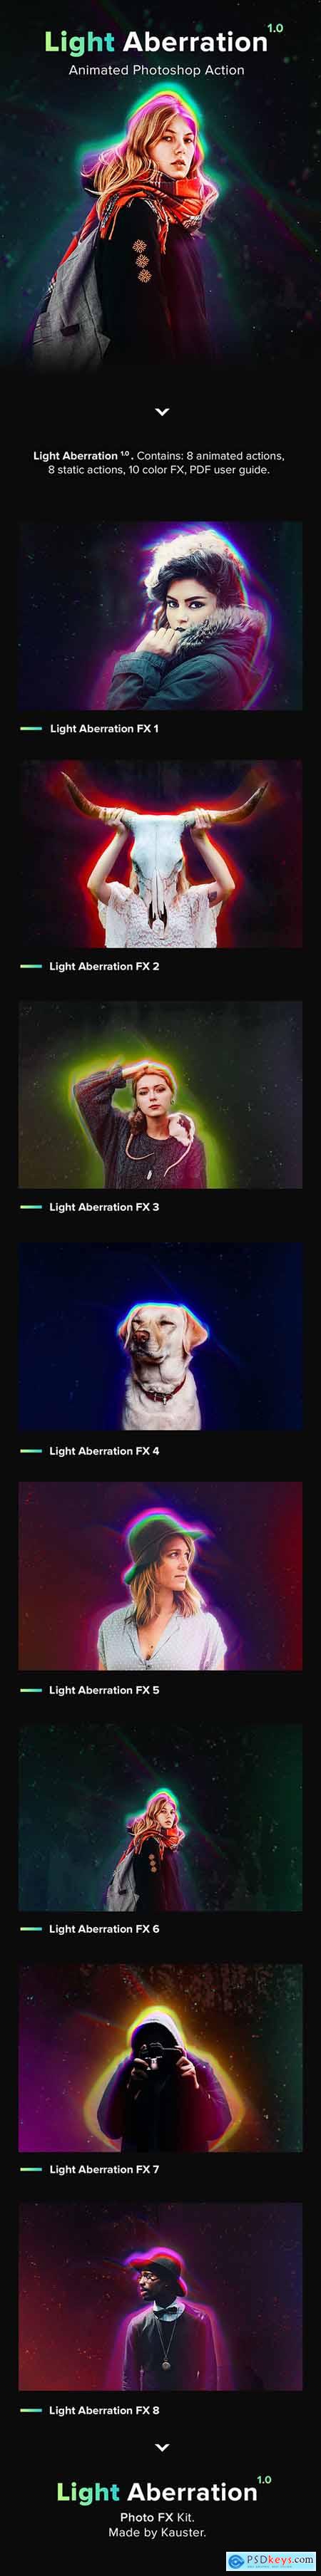 Animated Light Aberration - Photoshop Action 22505480